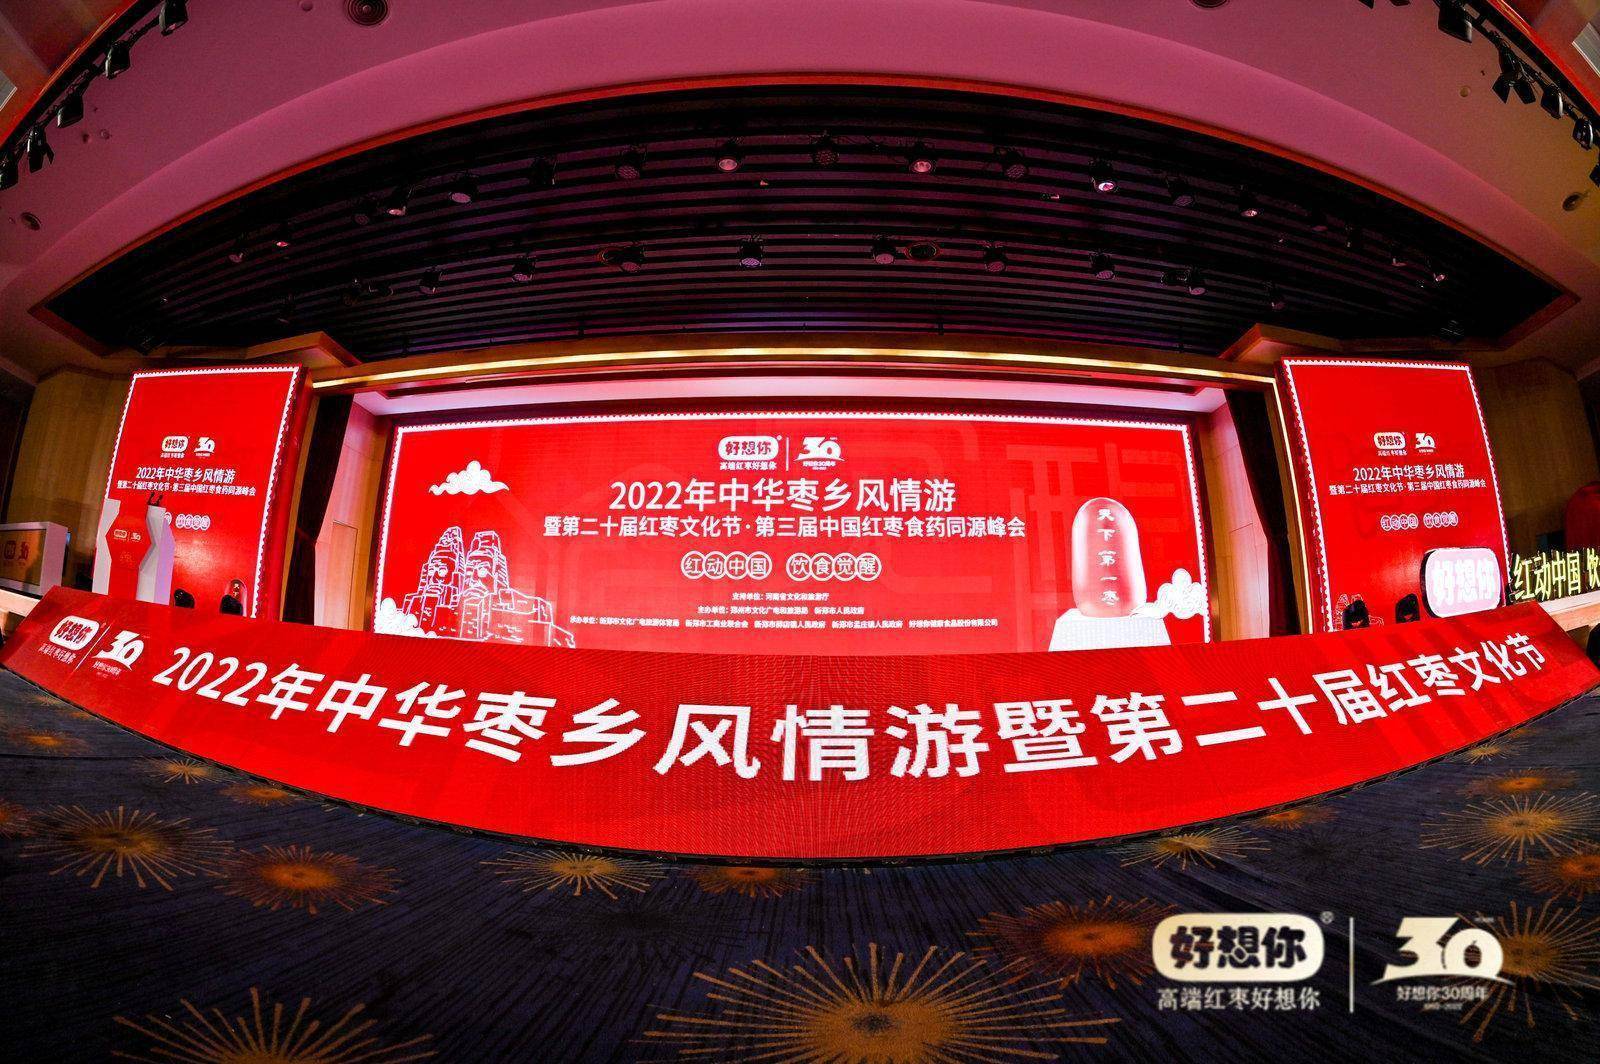 2022年中华枣乡风情游暨第二十届红枣文化节正式启动